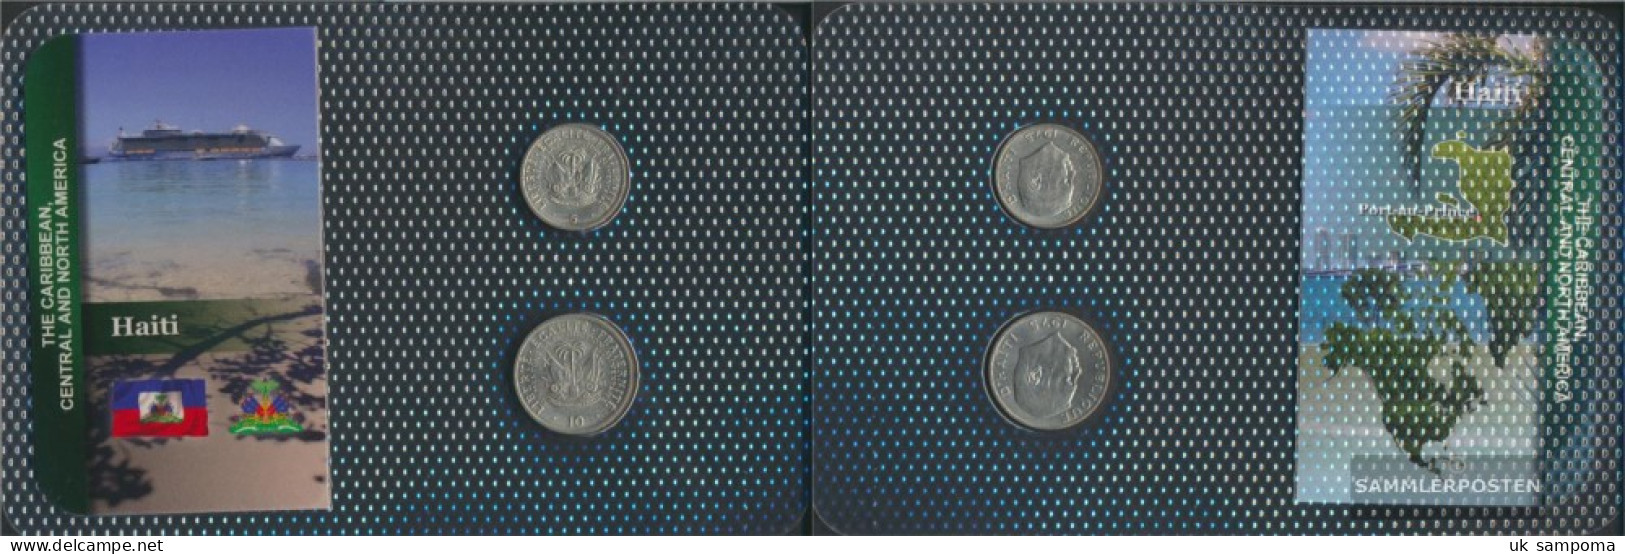 Haiti 1975 Stgl./unzirkuliert Kursmünzen Stgl./unzirkuliert 1975 5 Centimes Until 10 Centimes - Haïti